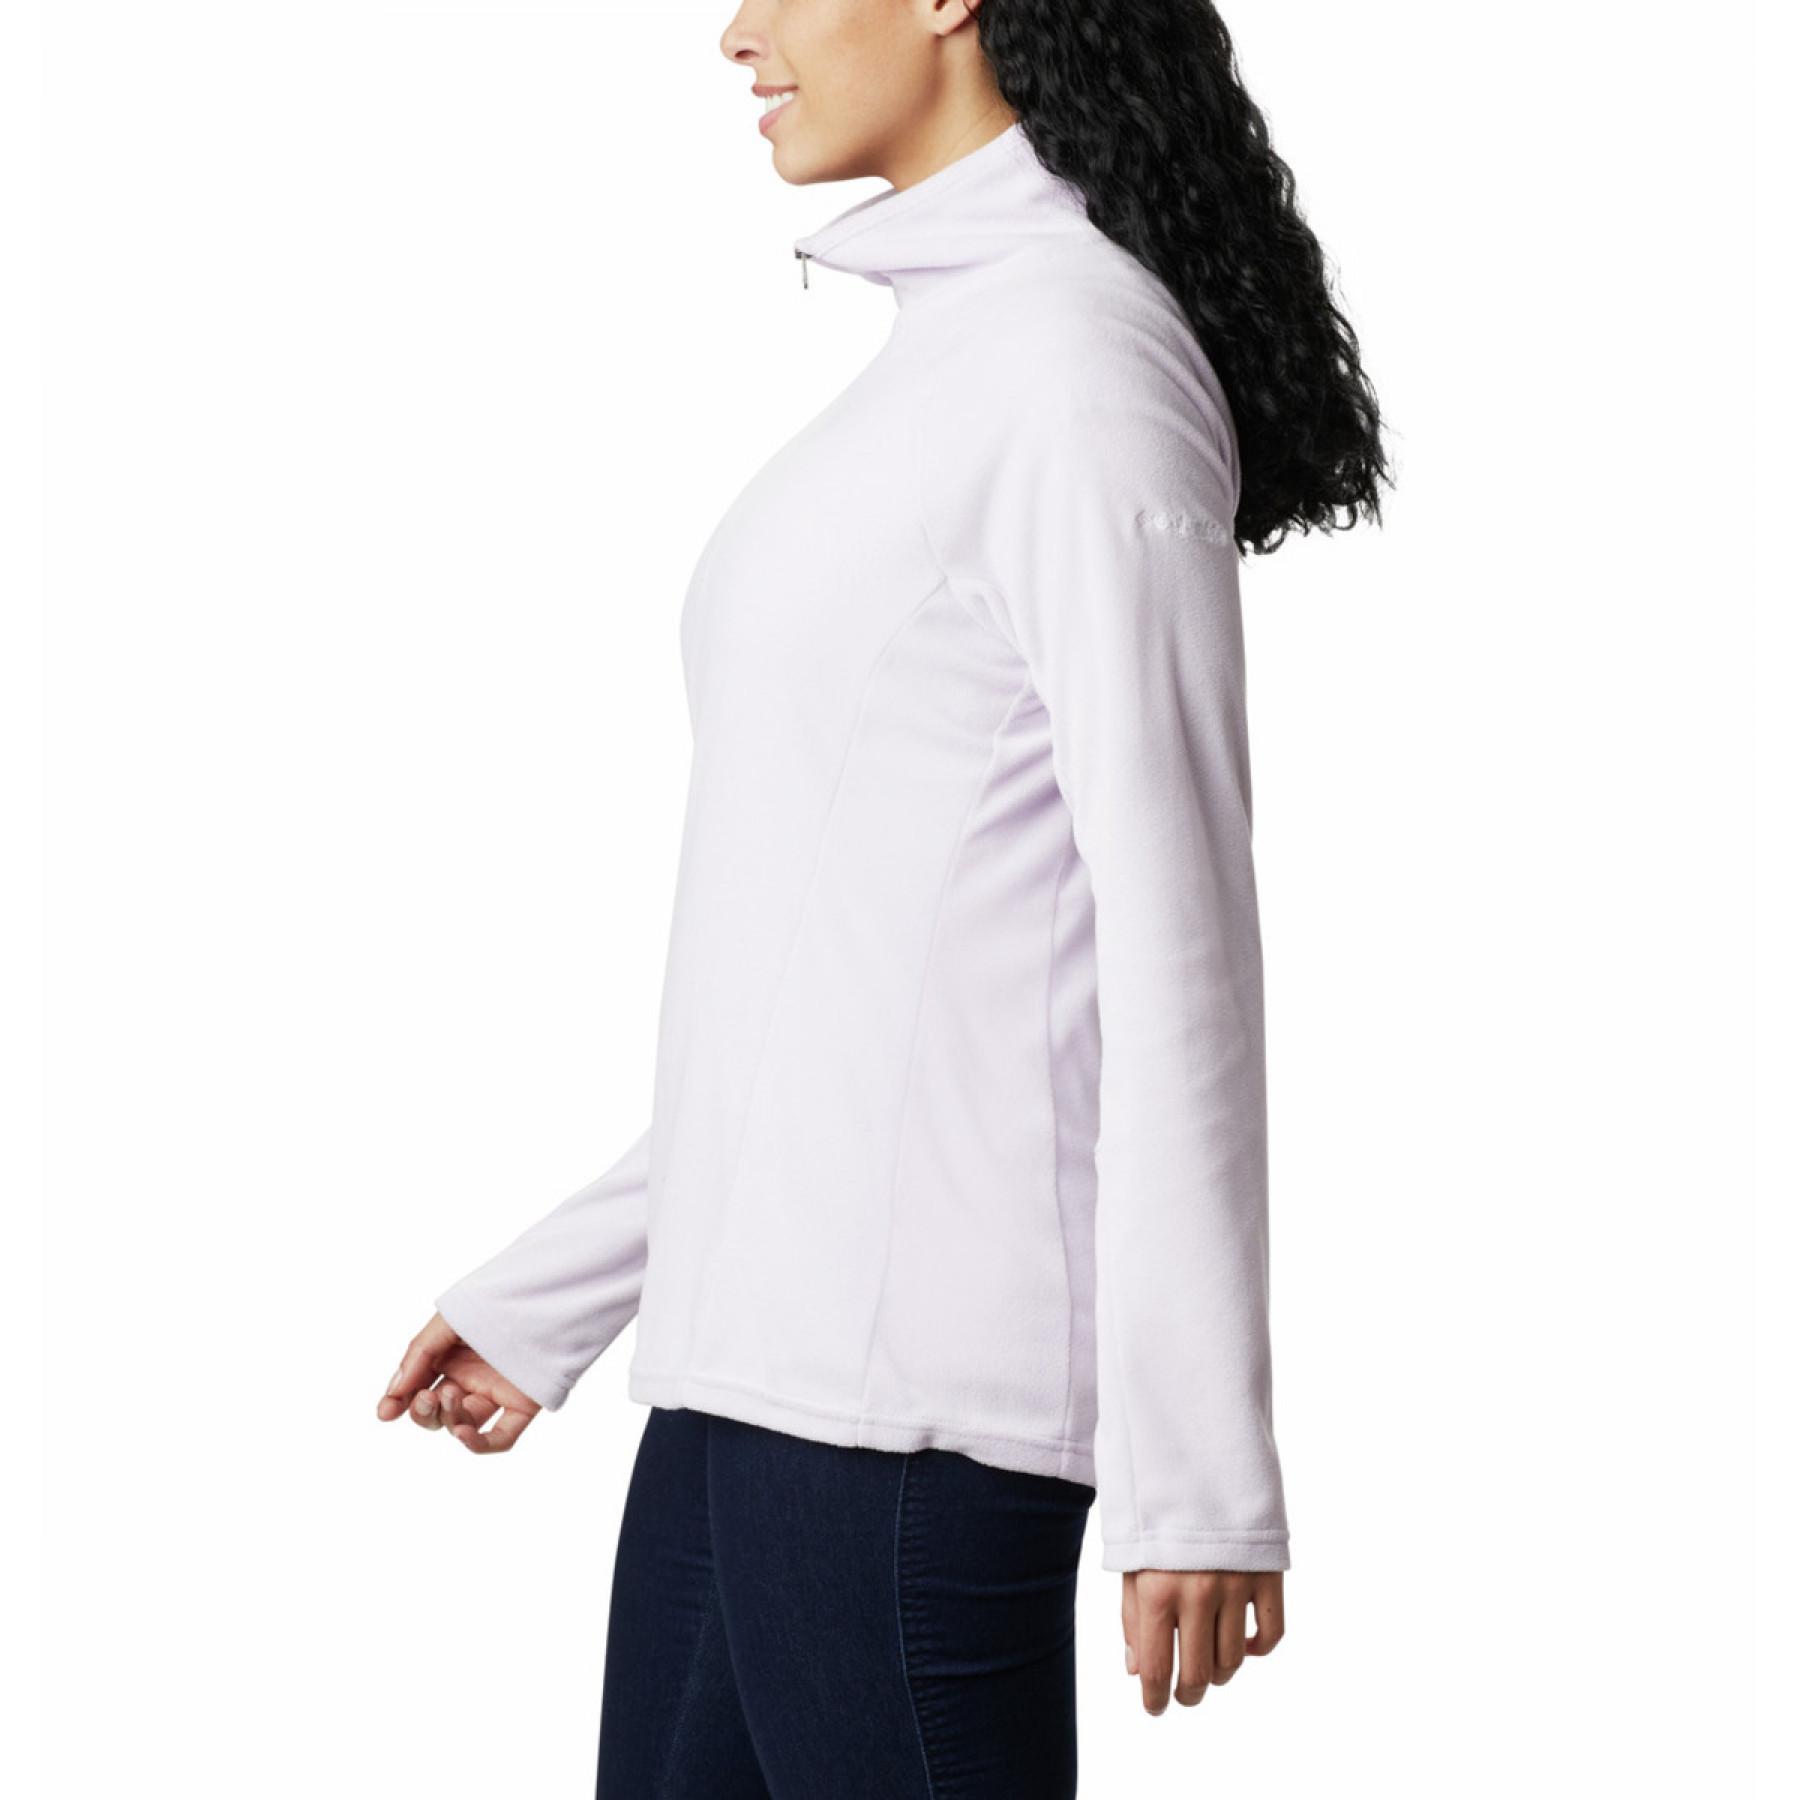 Women's 1/2 zip sweatshirt Columbia Glacial IV Print pro